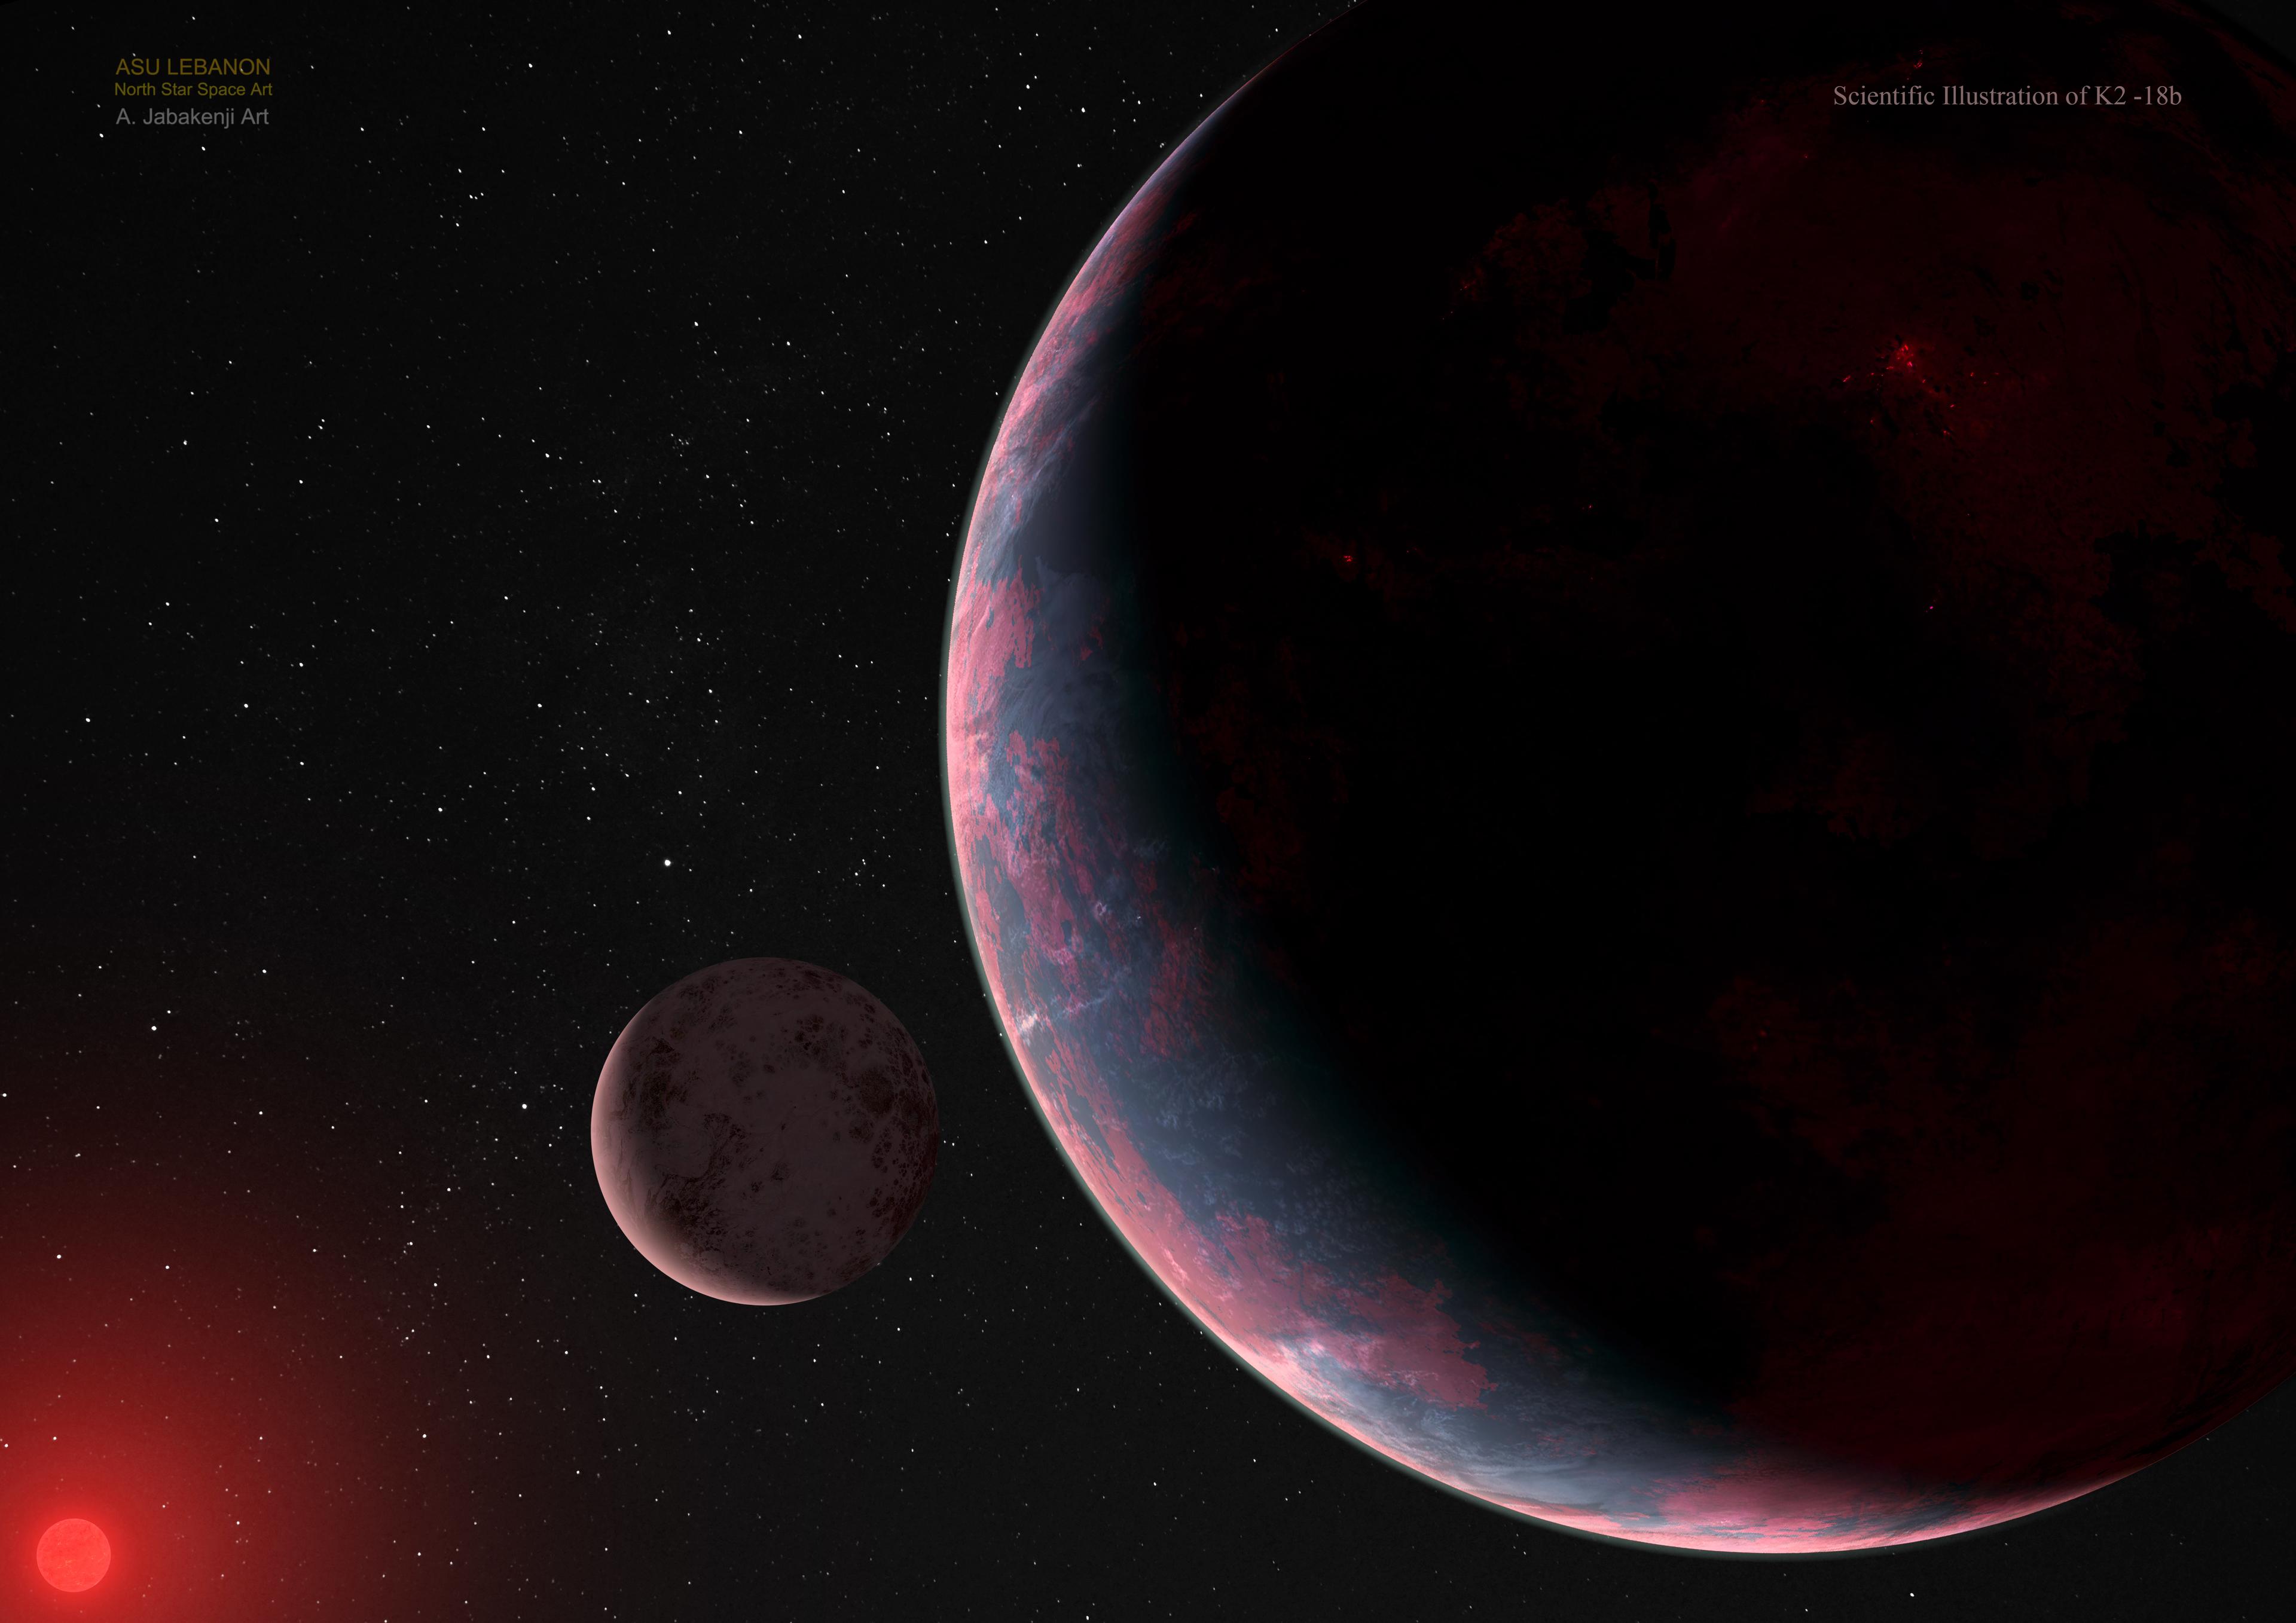 رسمٌ توضيحيّ لفنّان يصوّر كوكباً أحمر غائم يدور حول نجمٍ أحمر بعيد. قرب الكوكب الخارجيّ يوجد قمر.